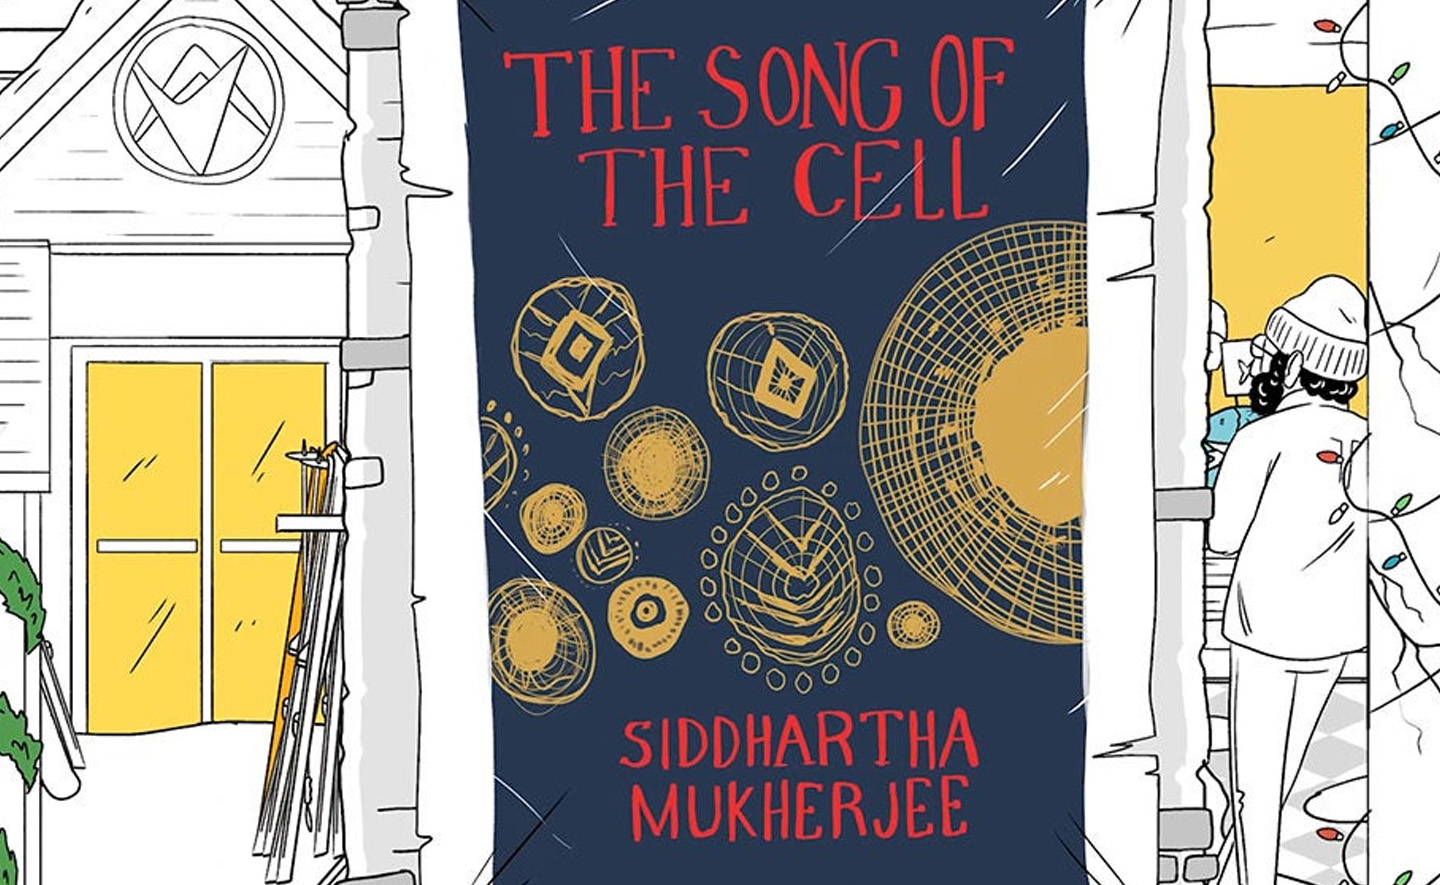 The Song of the Cell: Cuốn sách về các khối tạo sự sống mà Bill Gates khuyên đọc có gì?